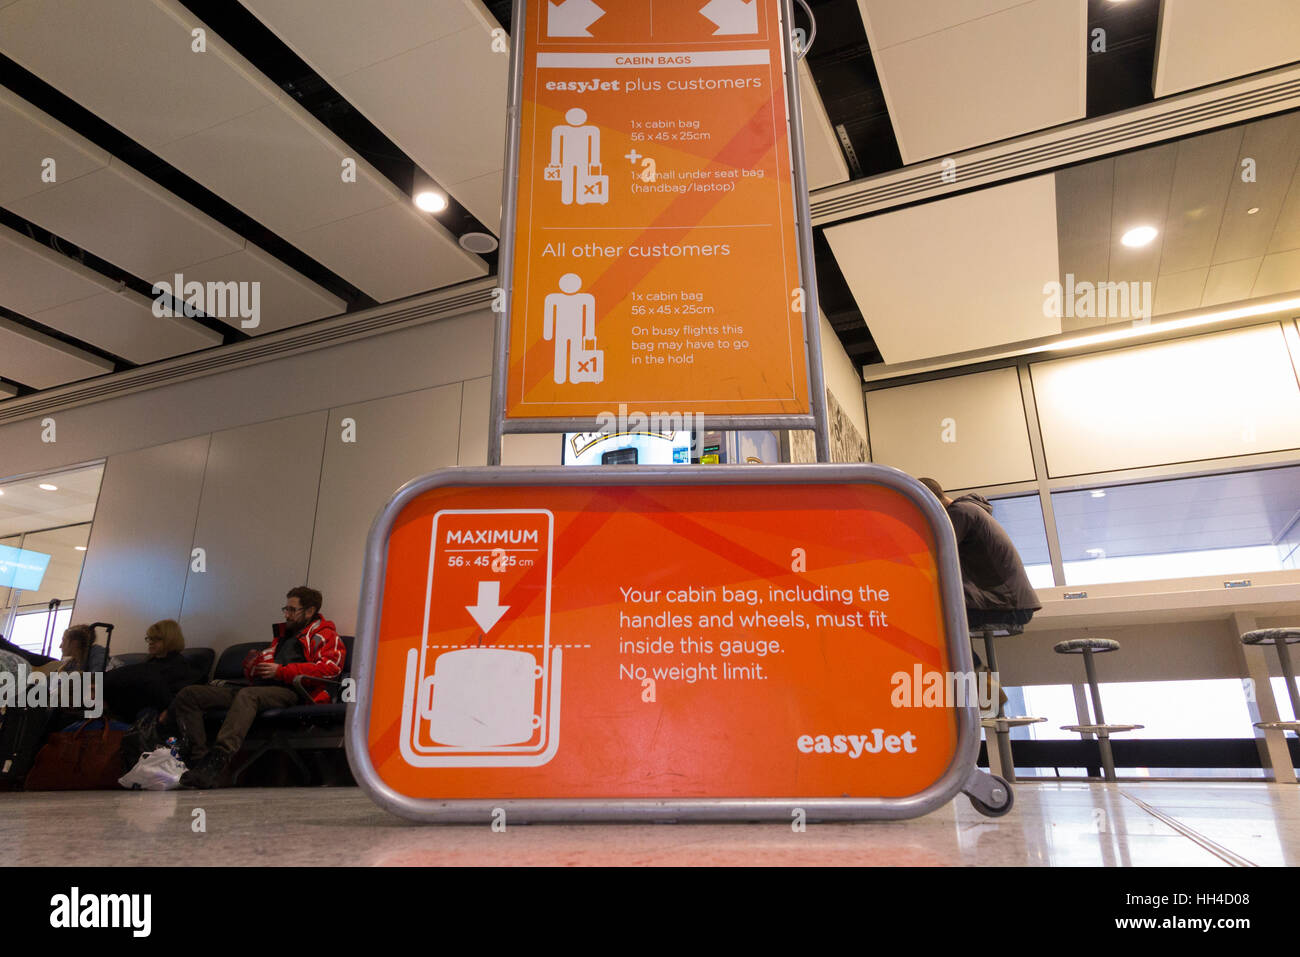 La taille des bagages sac cage châssis : testeur de mesurer les dimensions des détenus à la main sur l'assurance de vol de l'aéroport Gatwick de Londres UK Banque D'Images